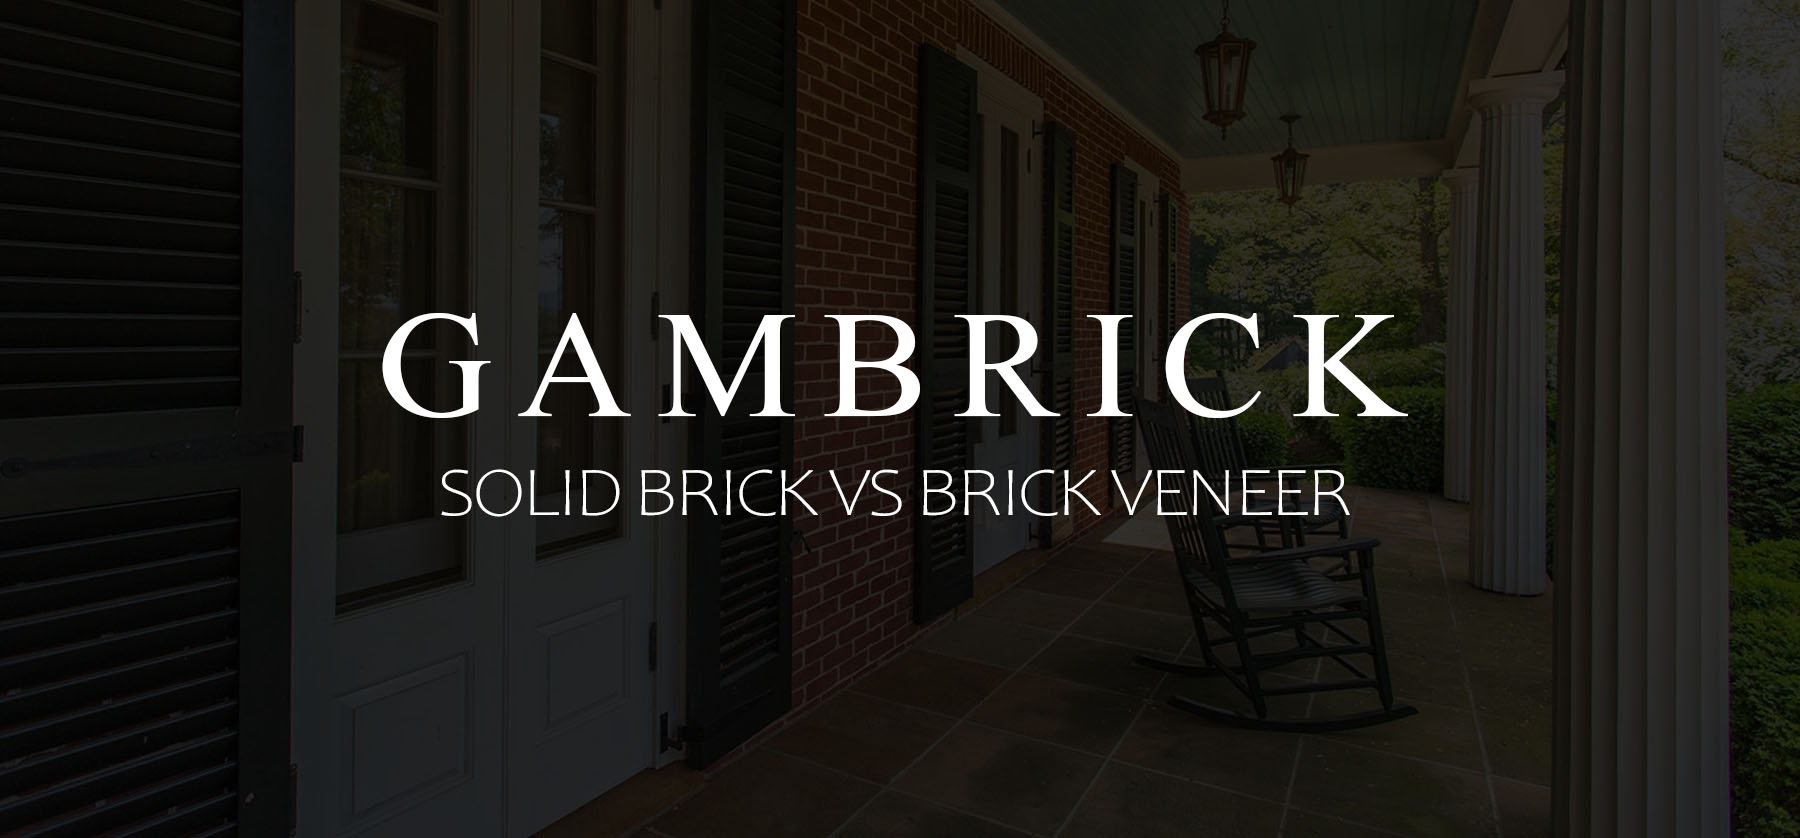 solid brick vs brick veneer banner pic